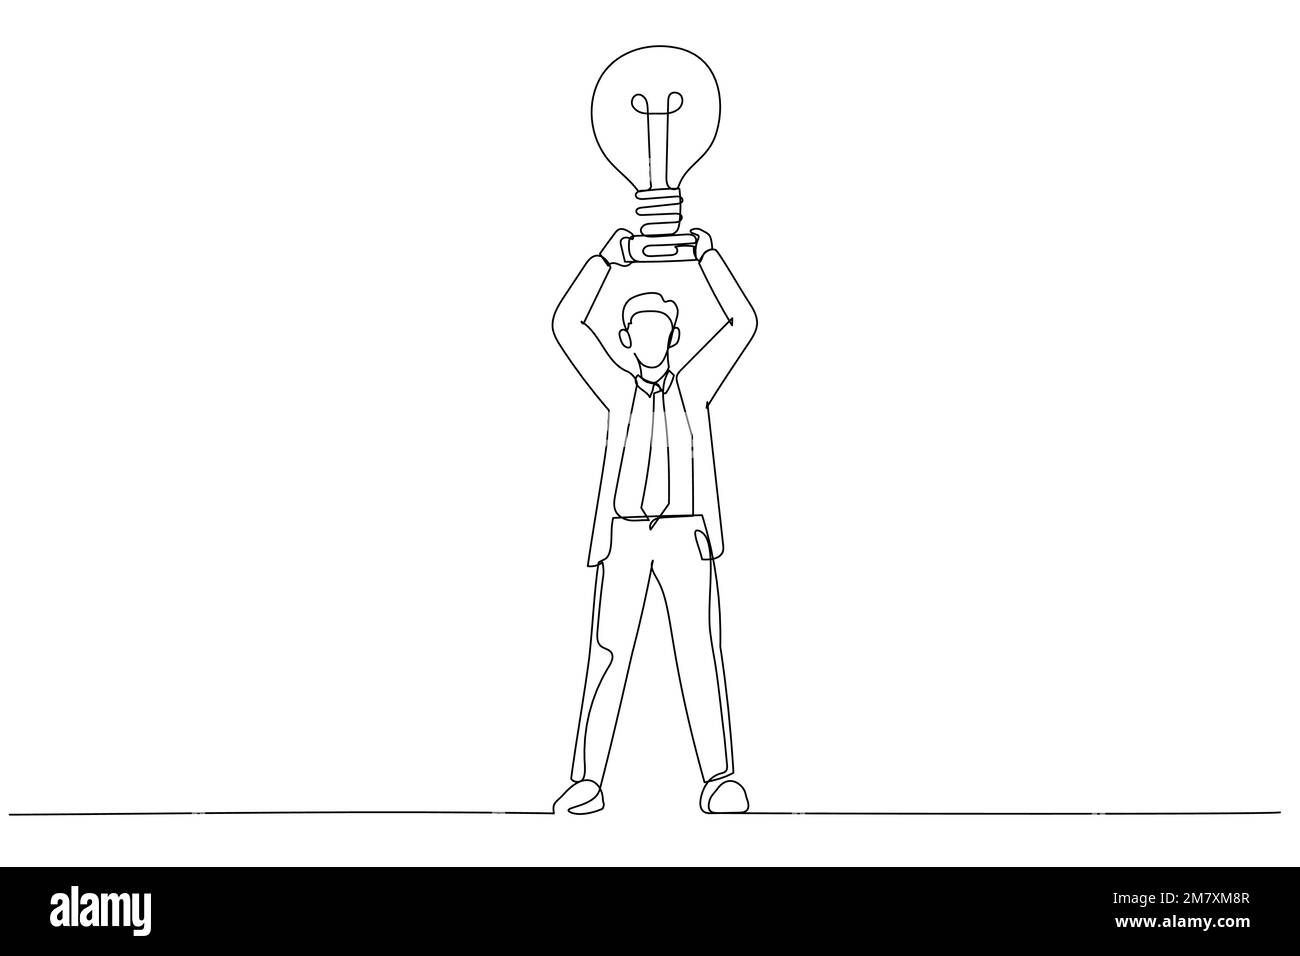 Die Zeichnung von Geschäftsmannshandschuhen nimmt einen Trophäenbecher, der wie eine Glühbirne auf einem Sockel aussieht. Einteilige, durchgehende Strichart Stock Vektor